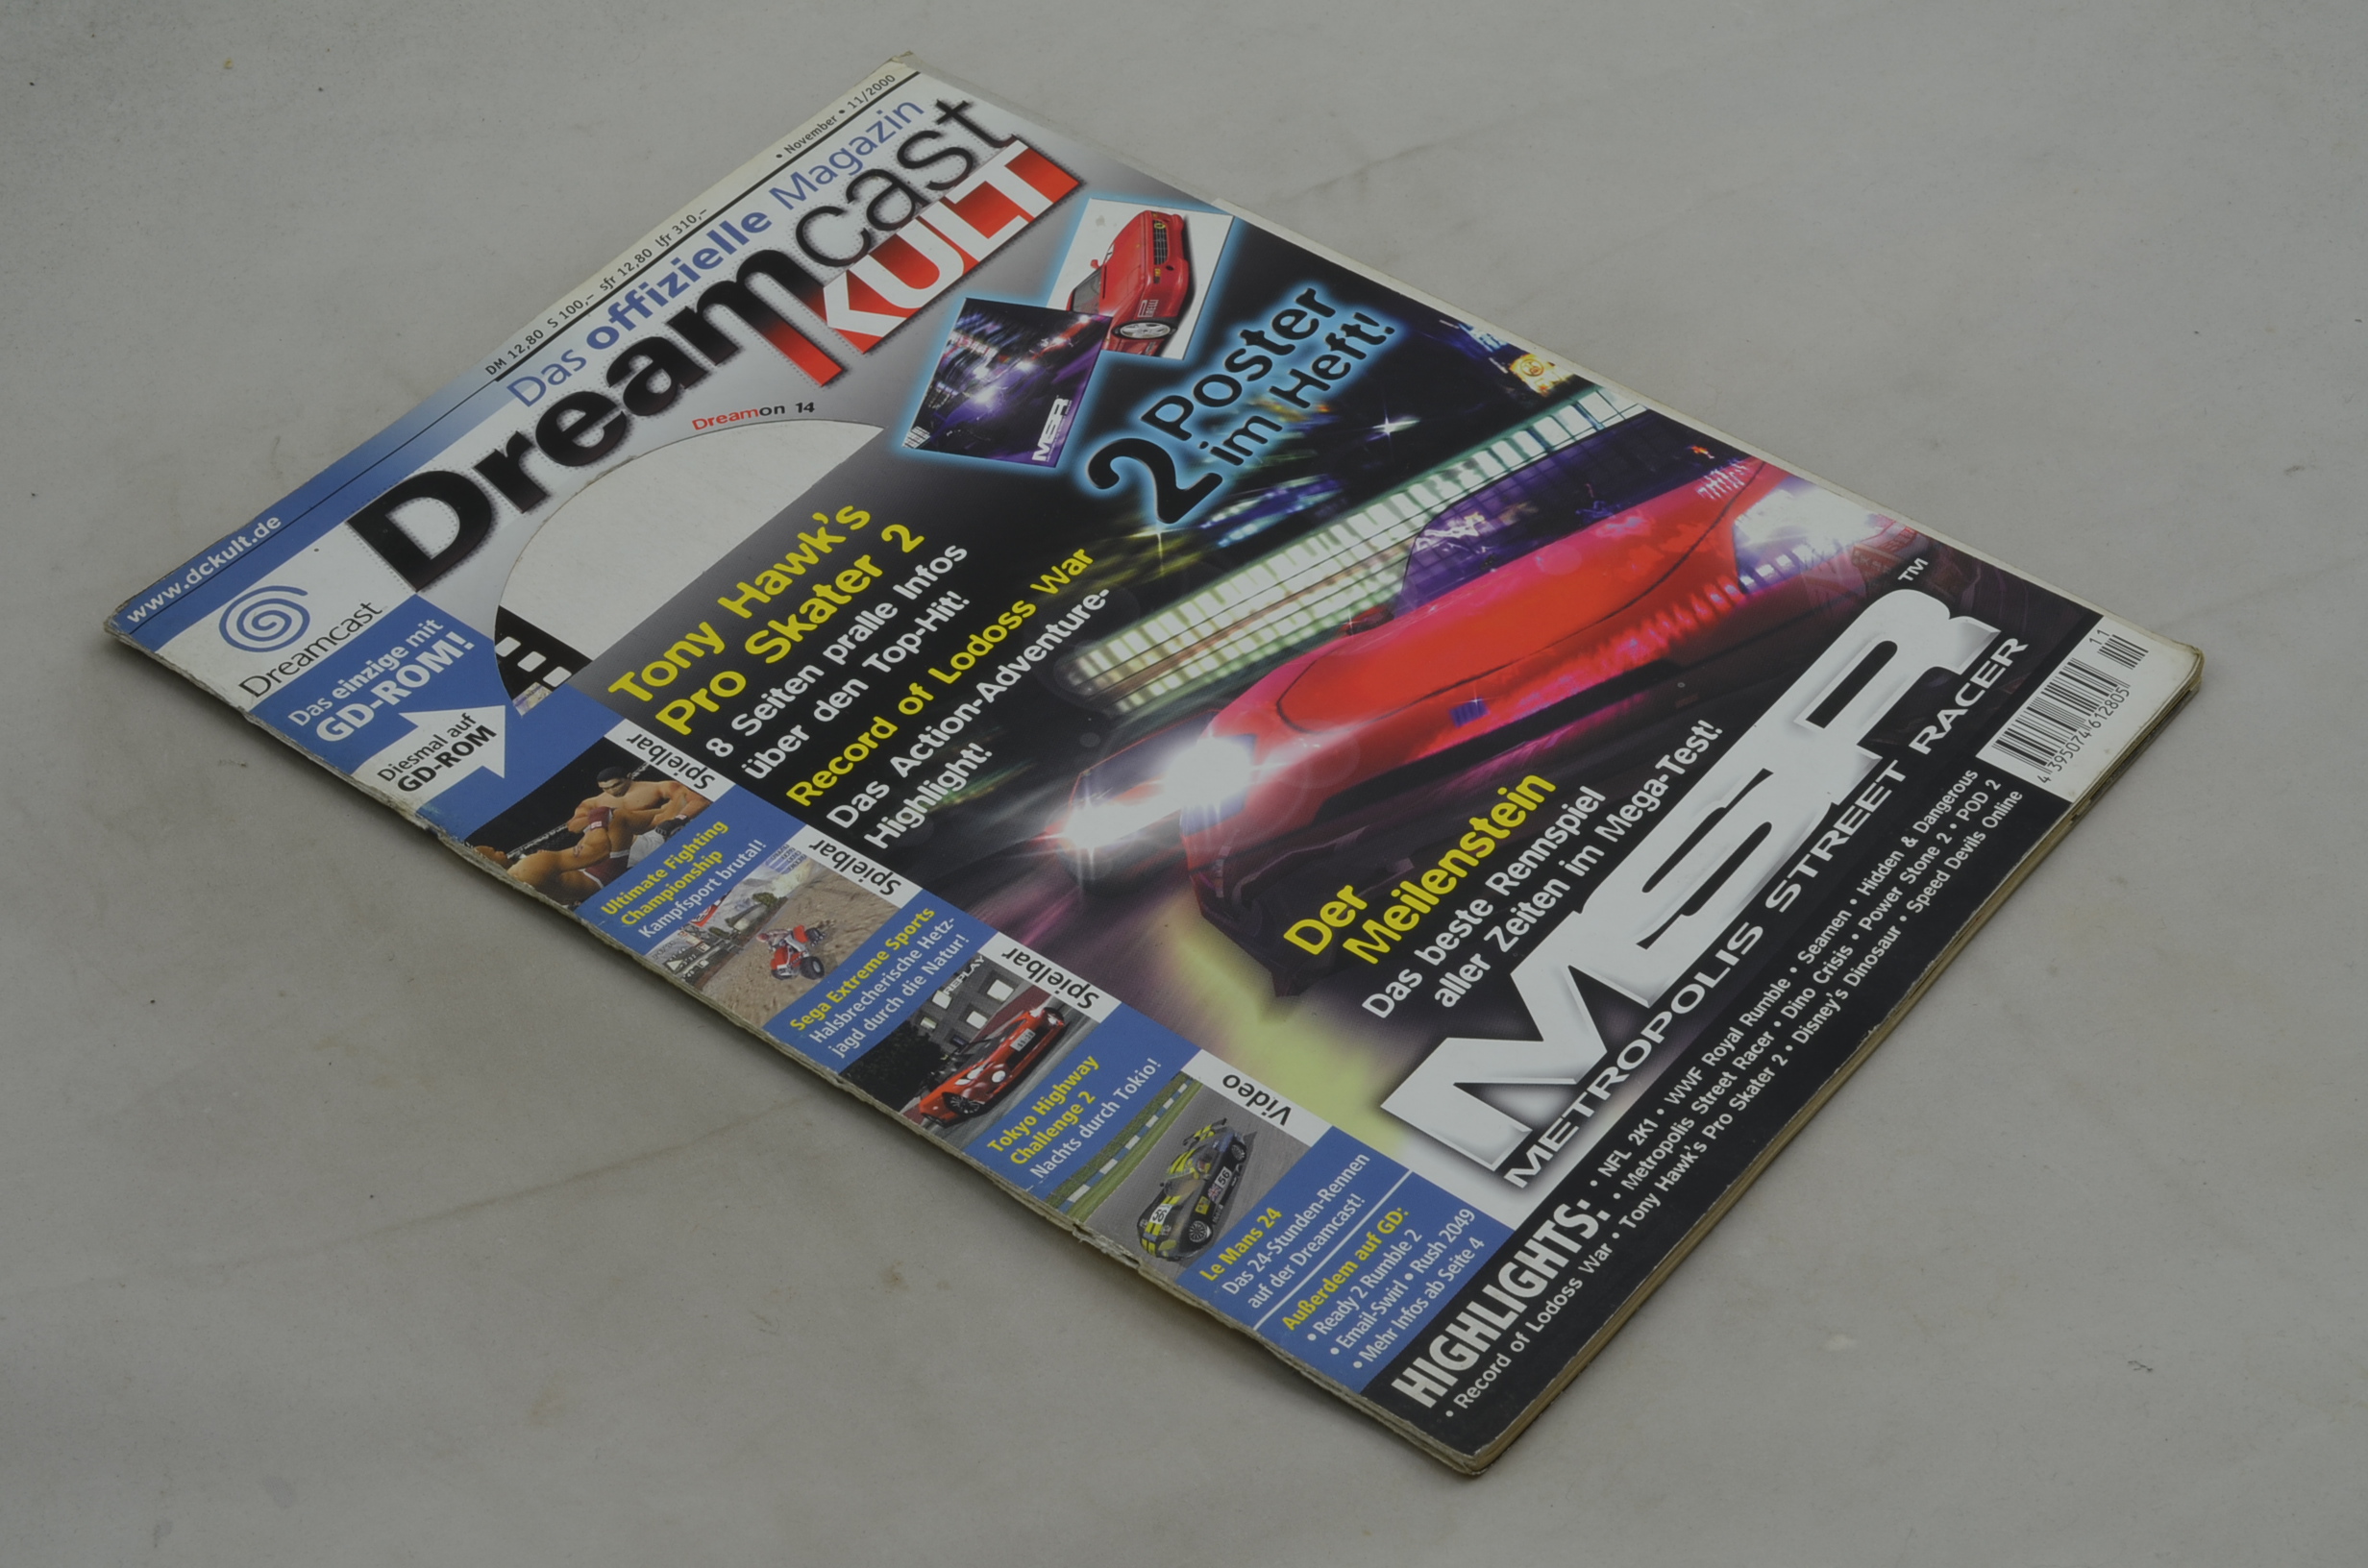 Produktbild von Dreamcast - Das offizielle Magazin 11/2000